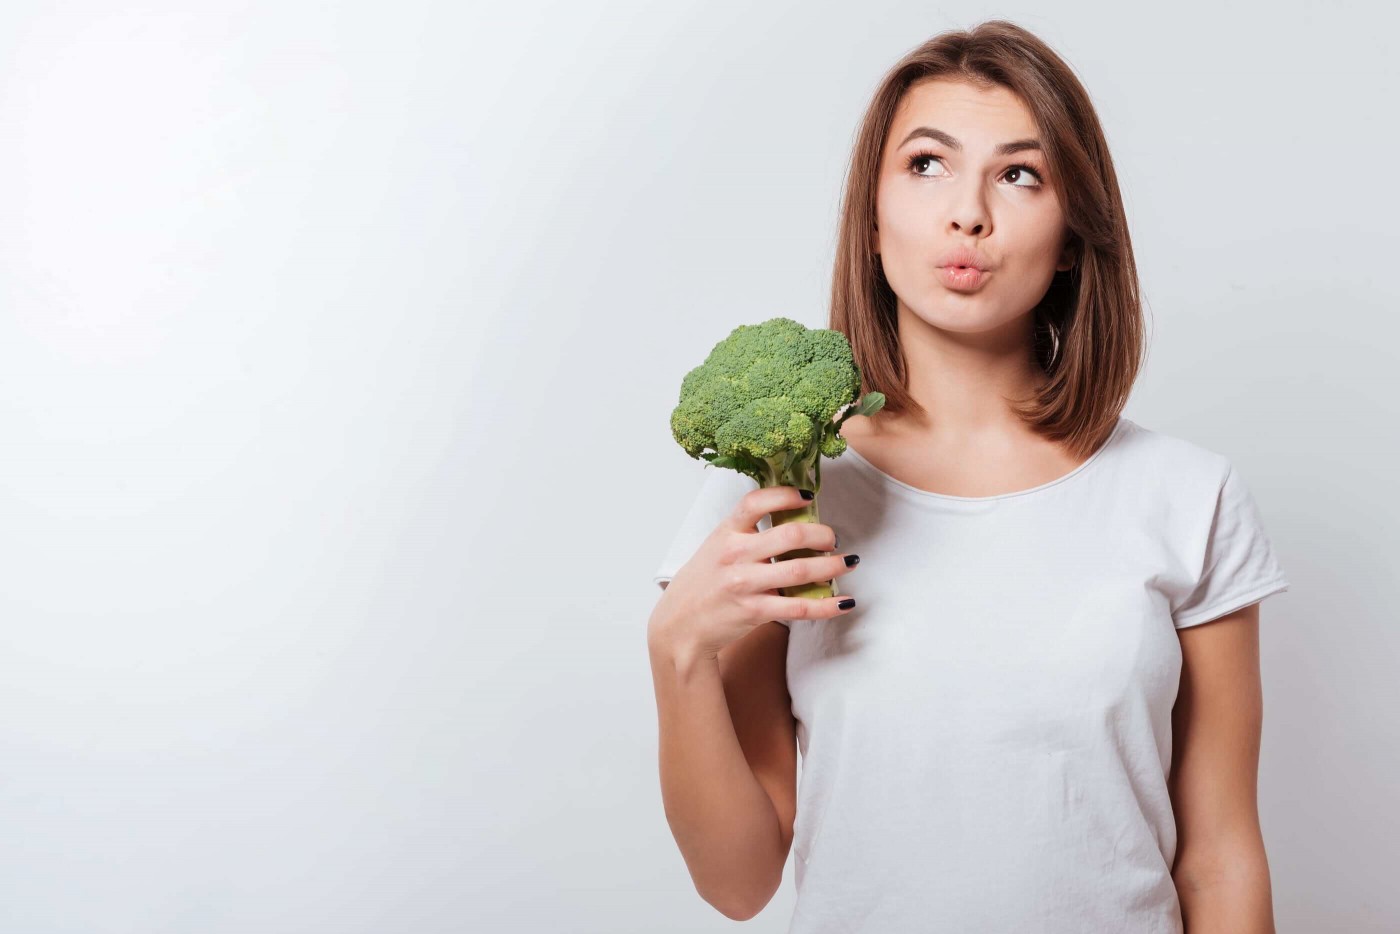 «Зеленый» источник индол-3-карбинола: в чем заключается польза брокколи для здоровья женщины